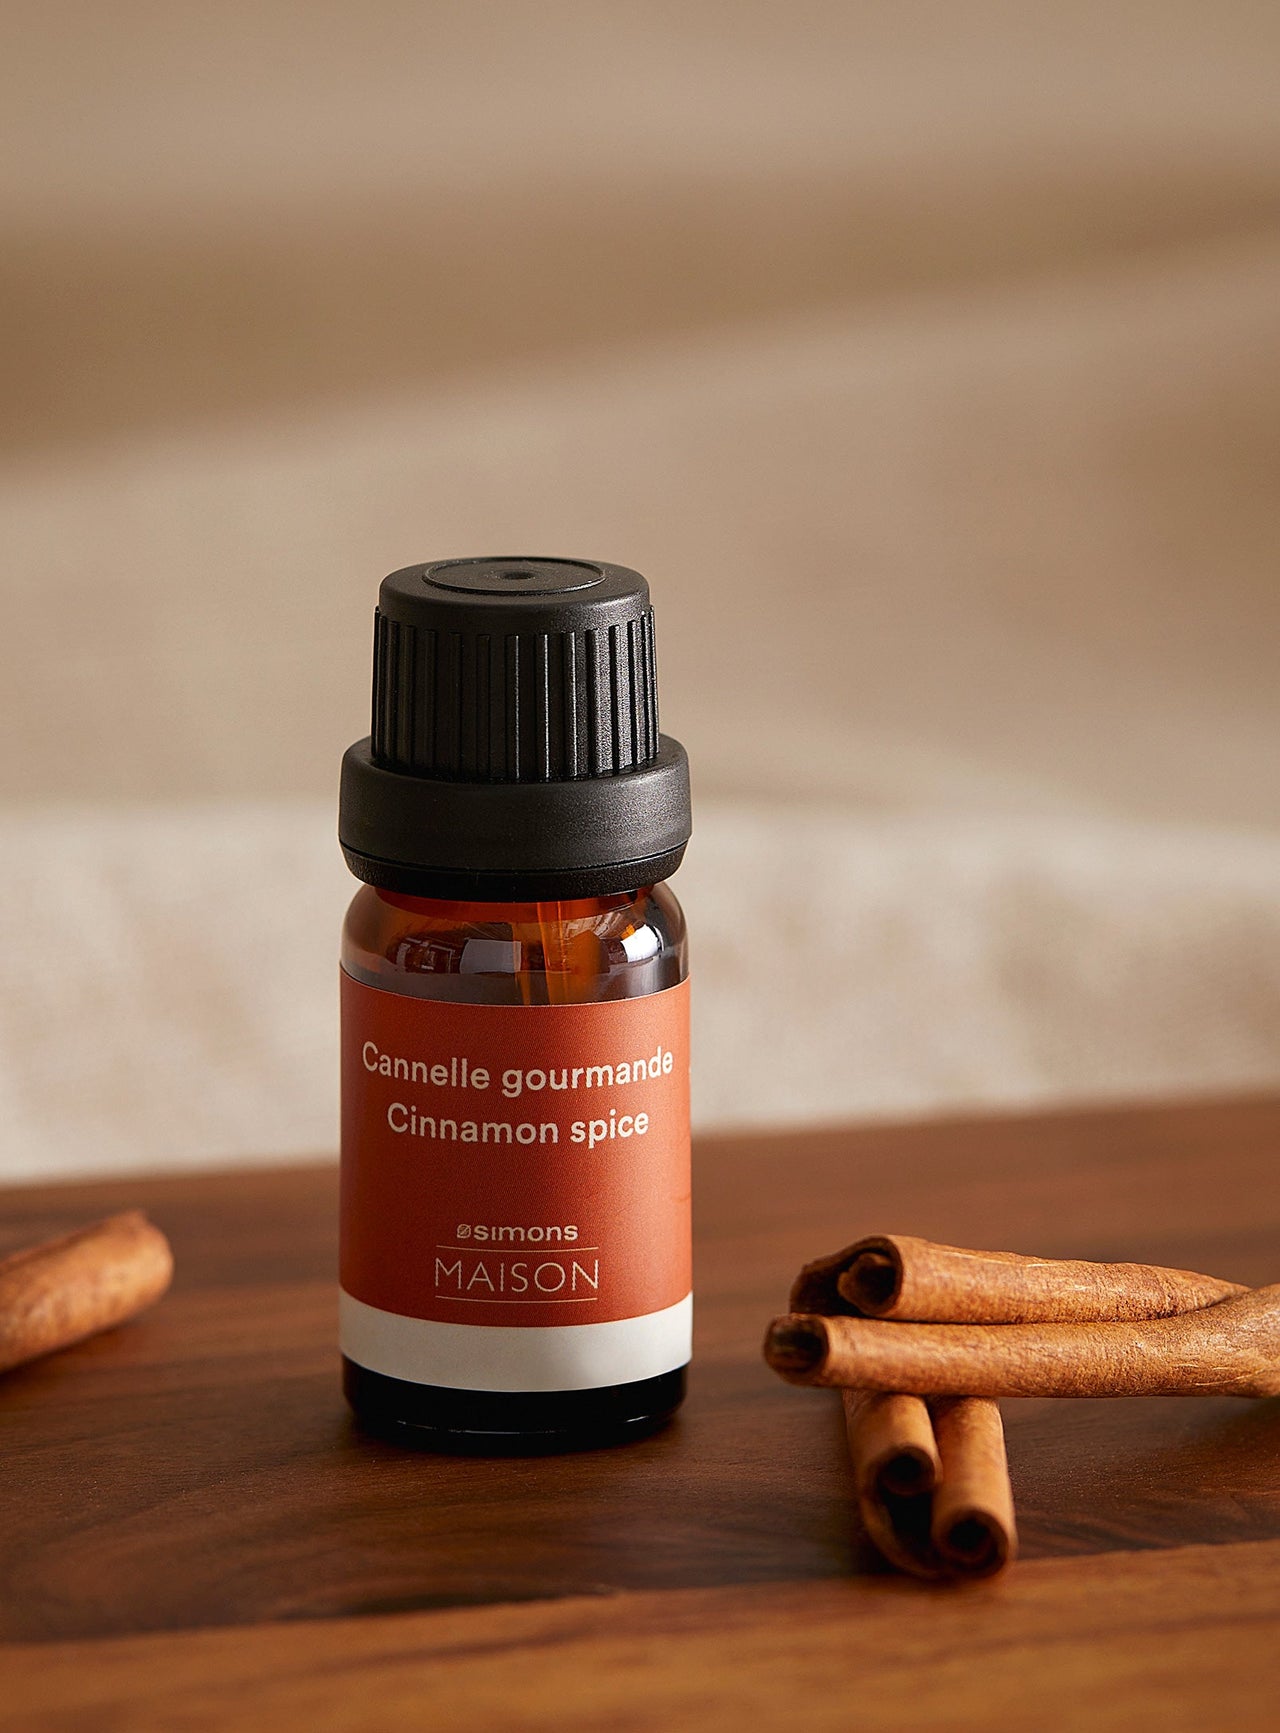 Cinnamon spice diffuser oil